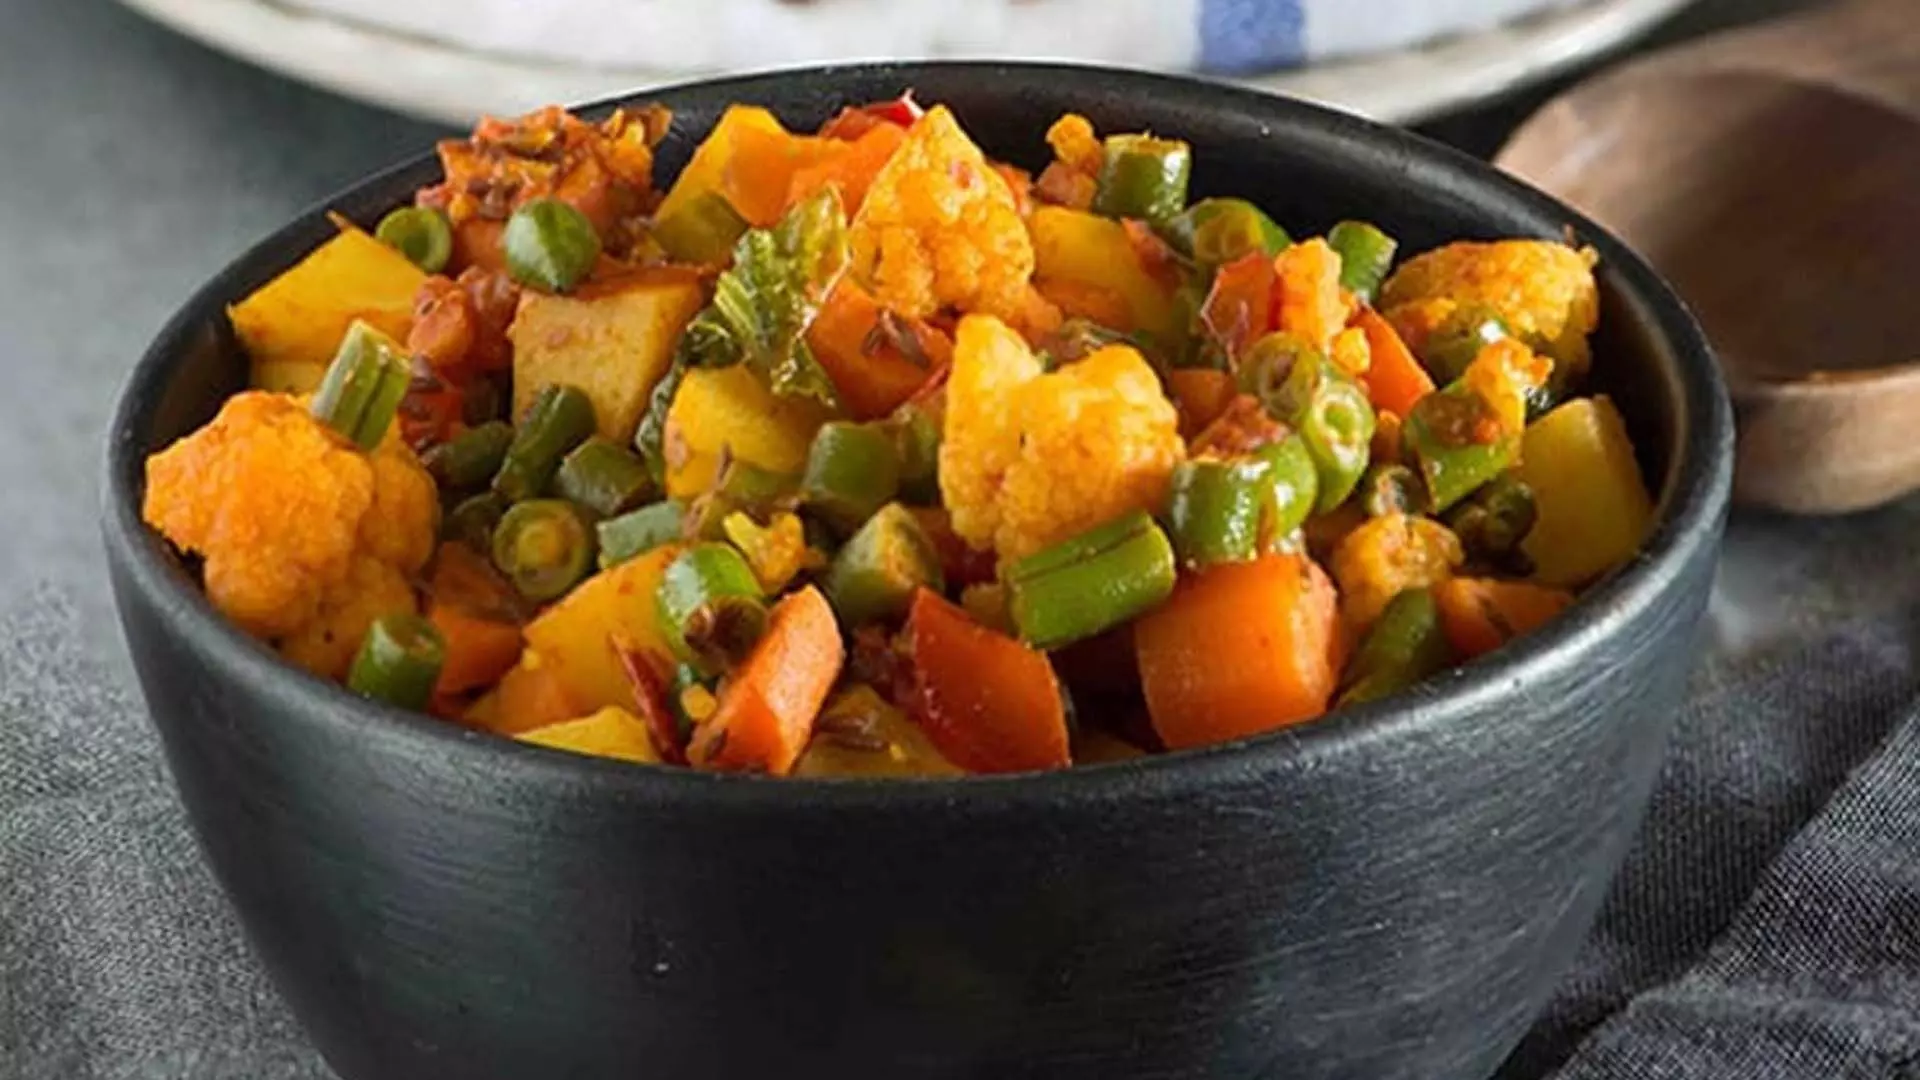 मिश्रित सब्जियों की सब्जी के साथ अपने रात्रिभोज को अद्भुत बनाएं